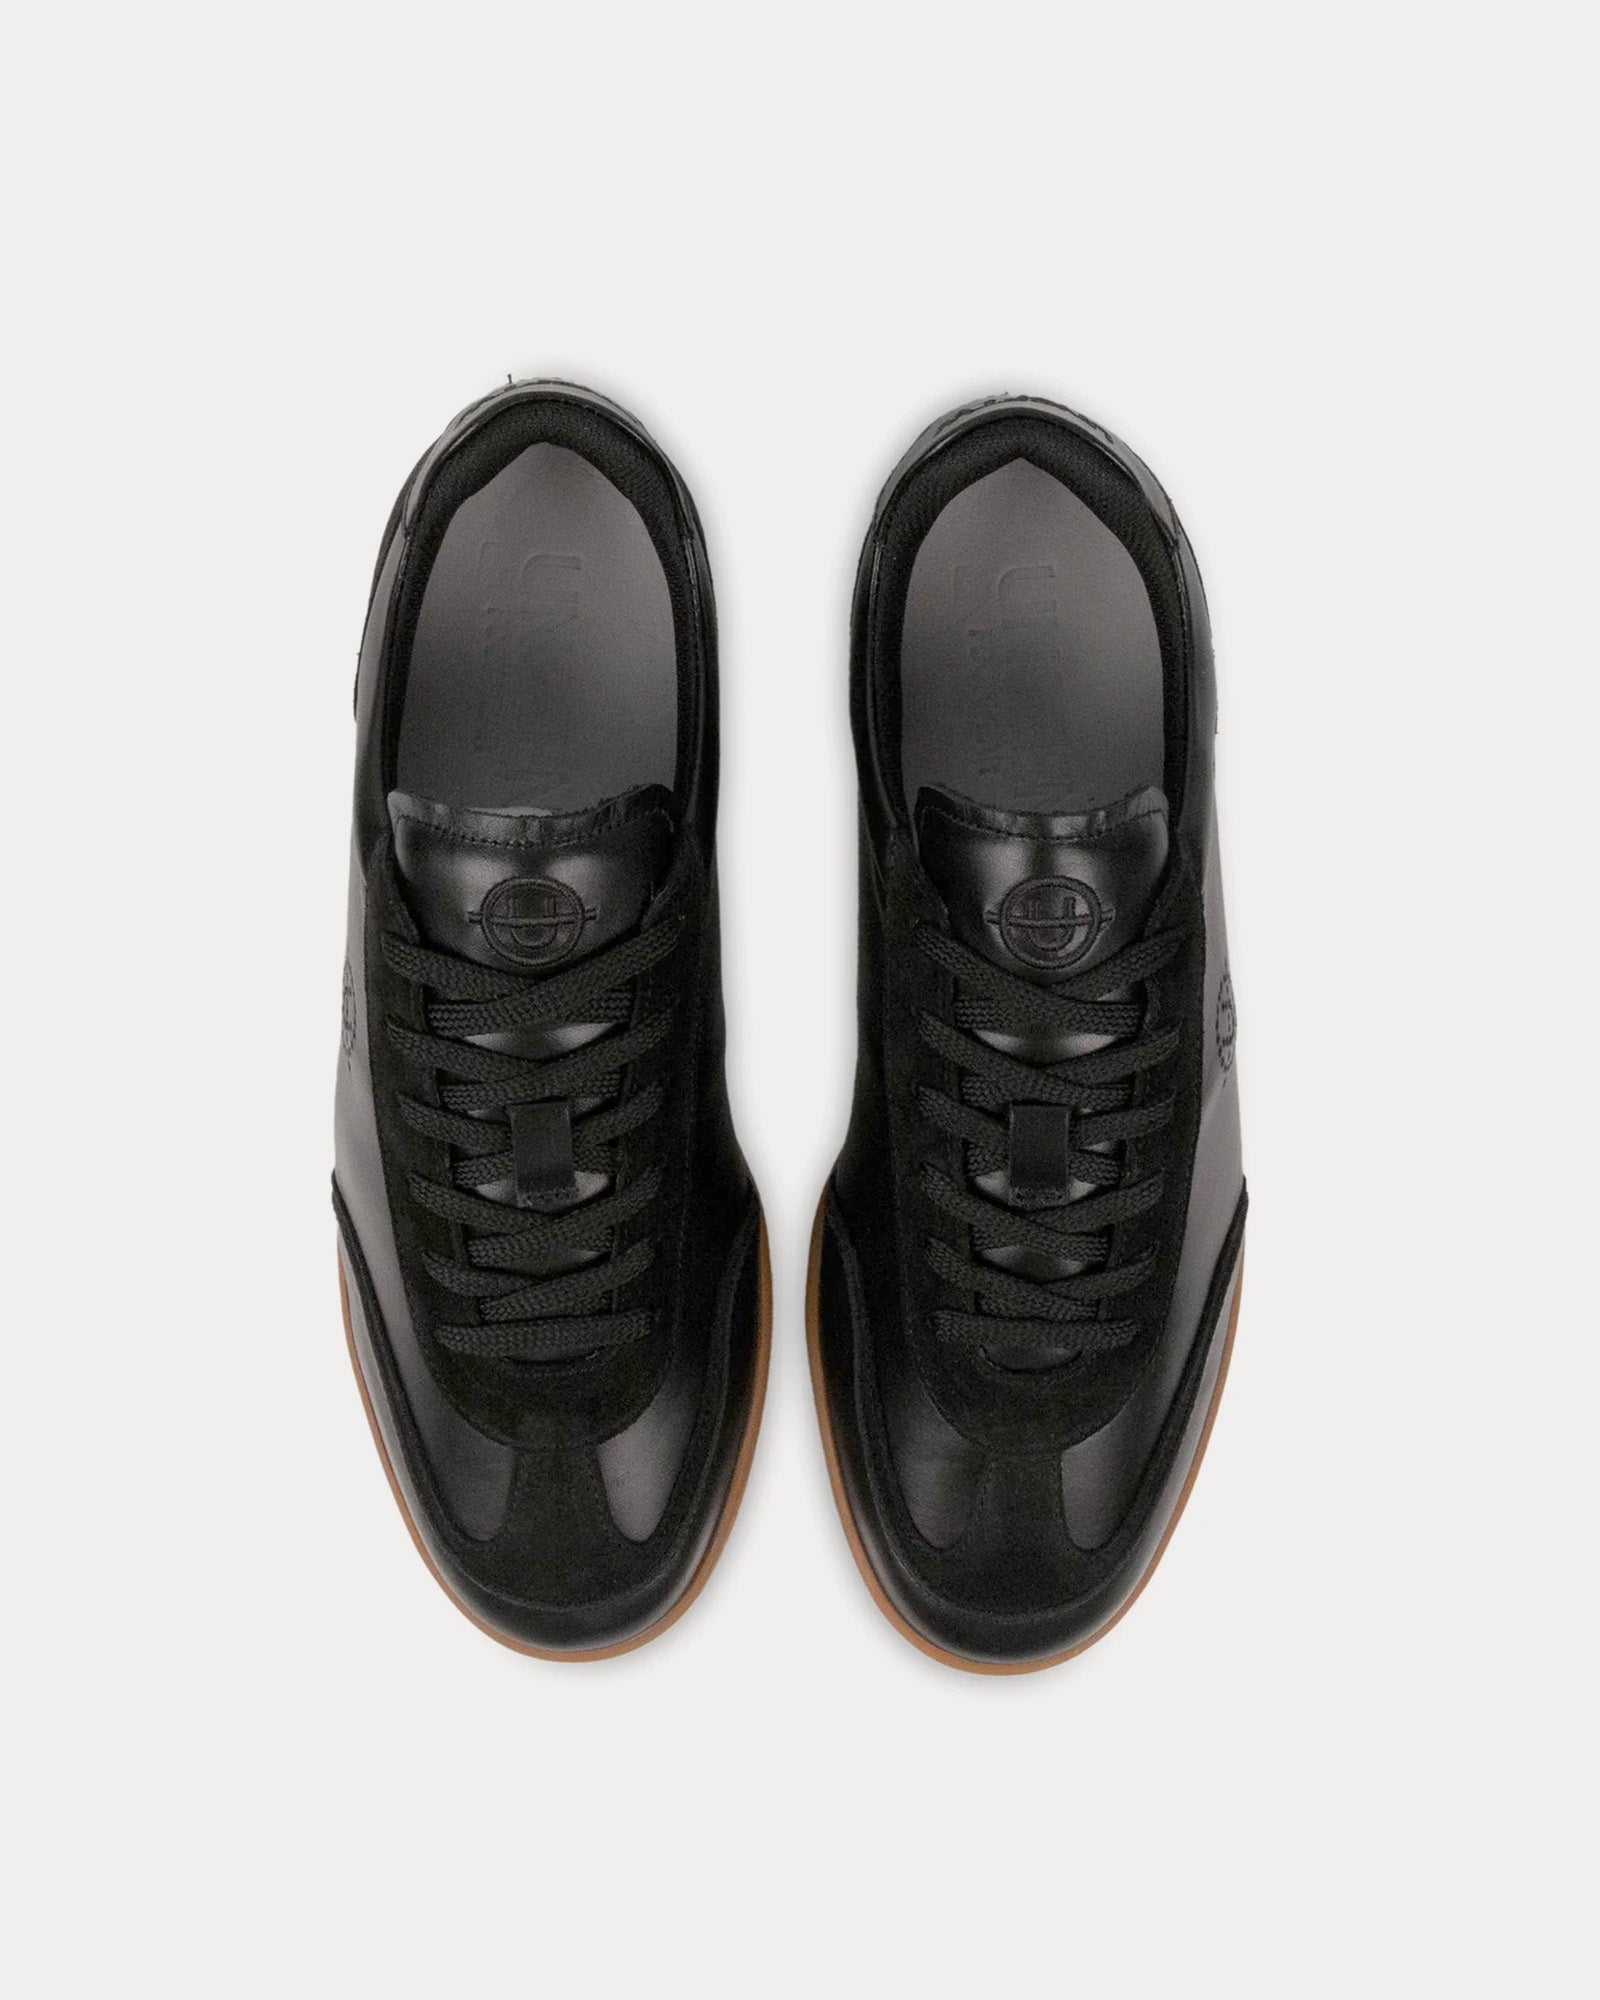 Unseen Footwear - Portelet Leather Black / Gum Low Top Sneakers